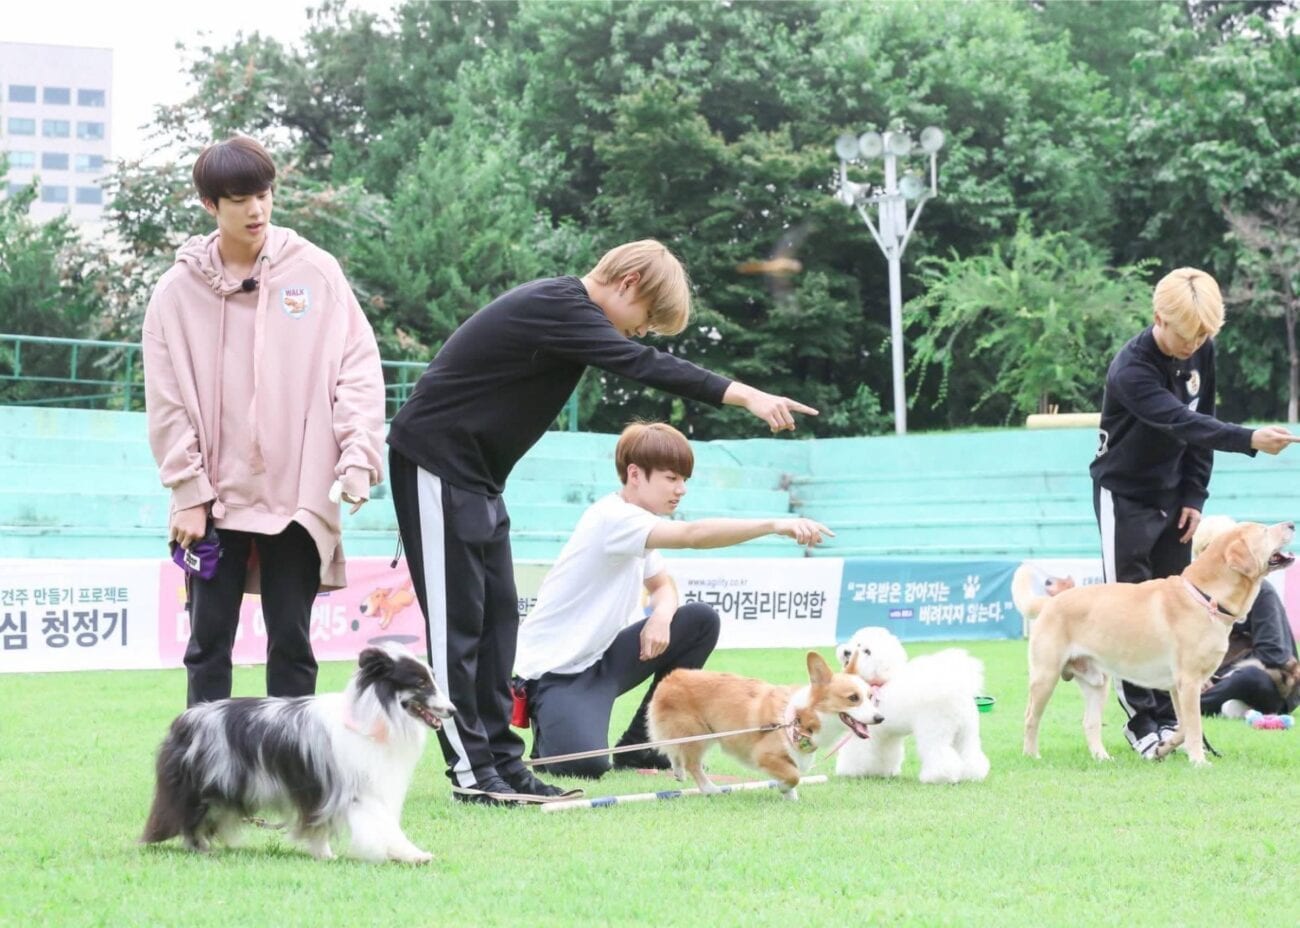 Sólo hay una cosa más linda que los miembros de BTS: sus perros. Checa todas las fotos de ellos con sus mascotas.